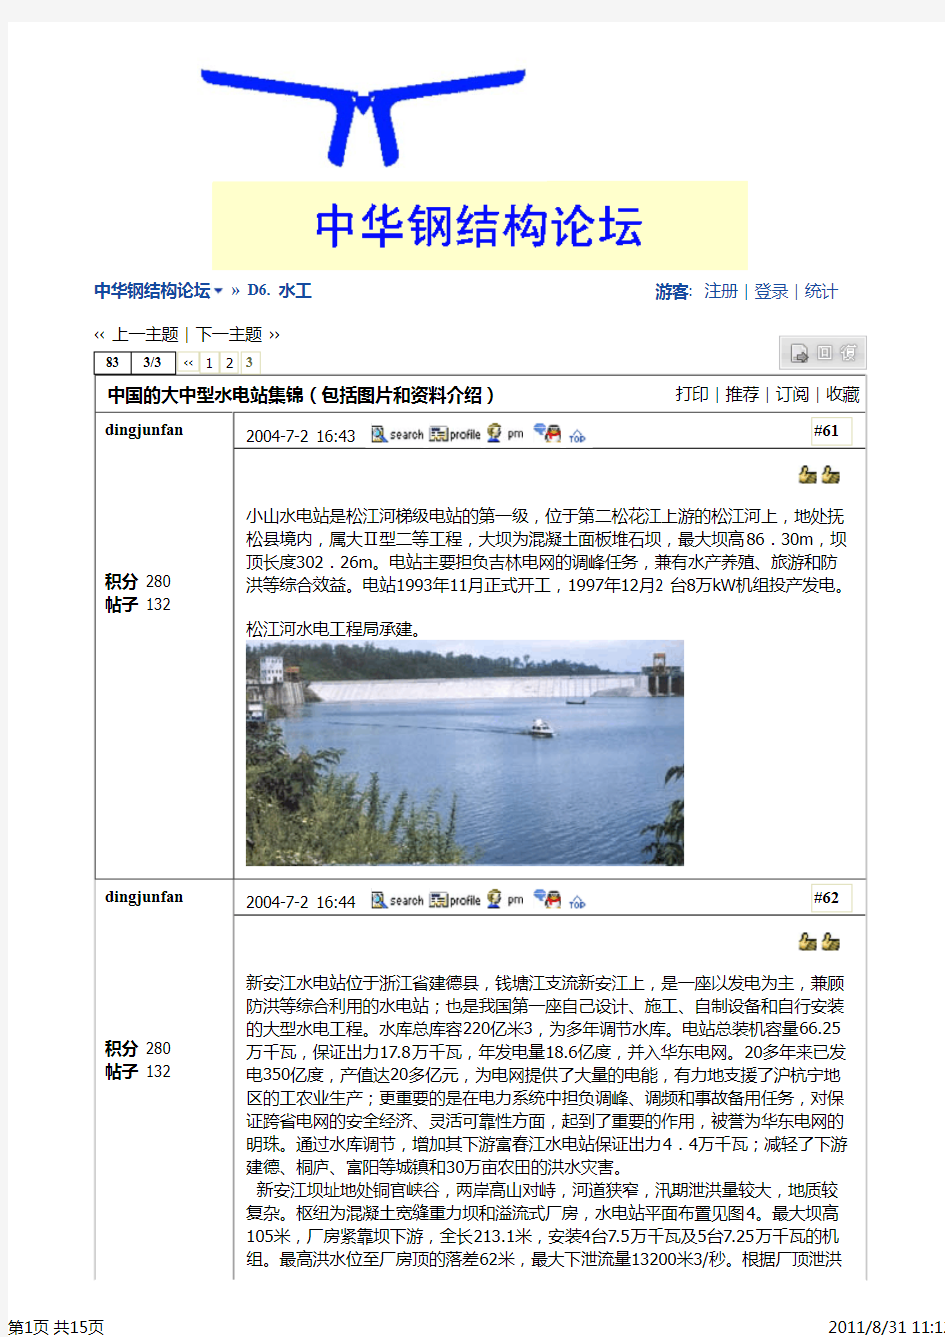 中国的大中型水电站集锦(包括图片和资料介绍) - 3